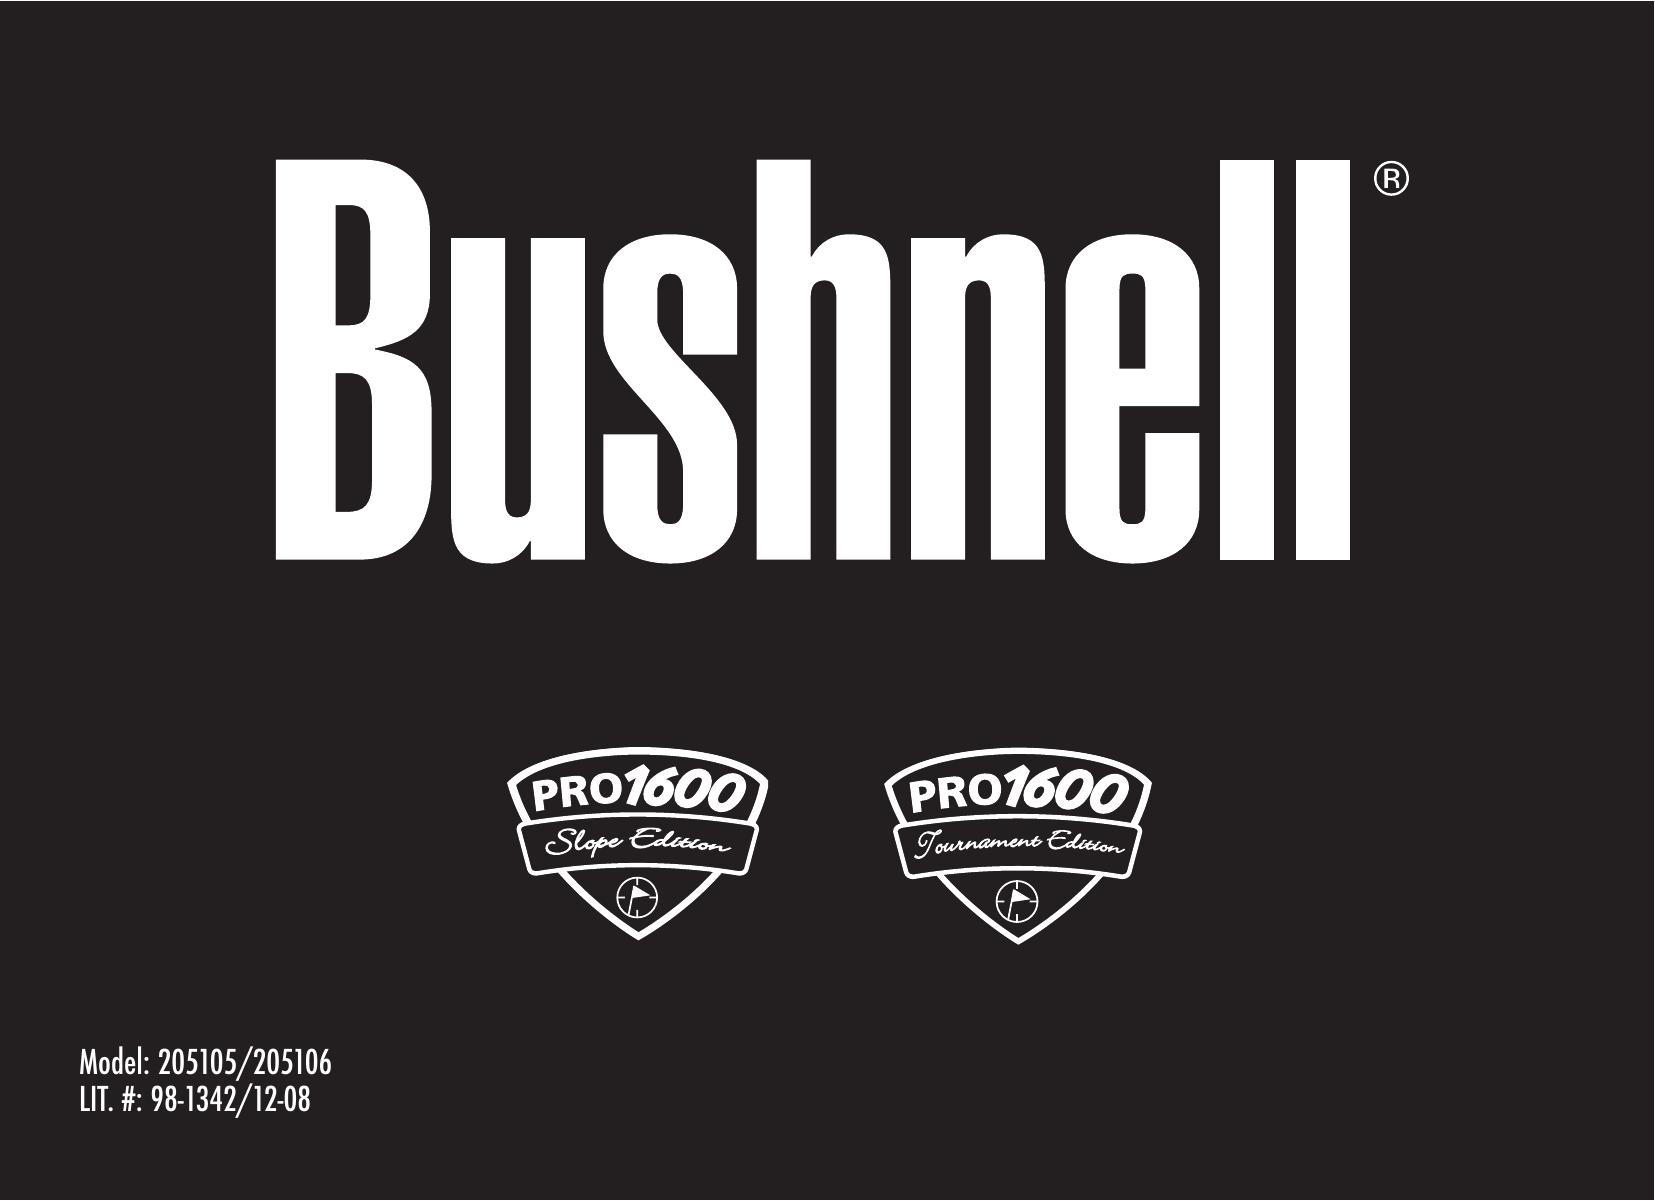 Bushnell 98-1342/12-08 Film Camera User Manual